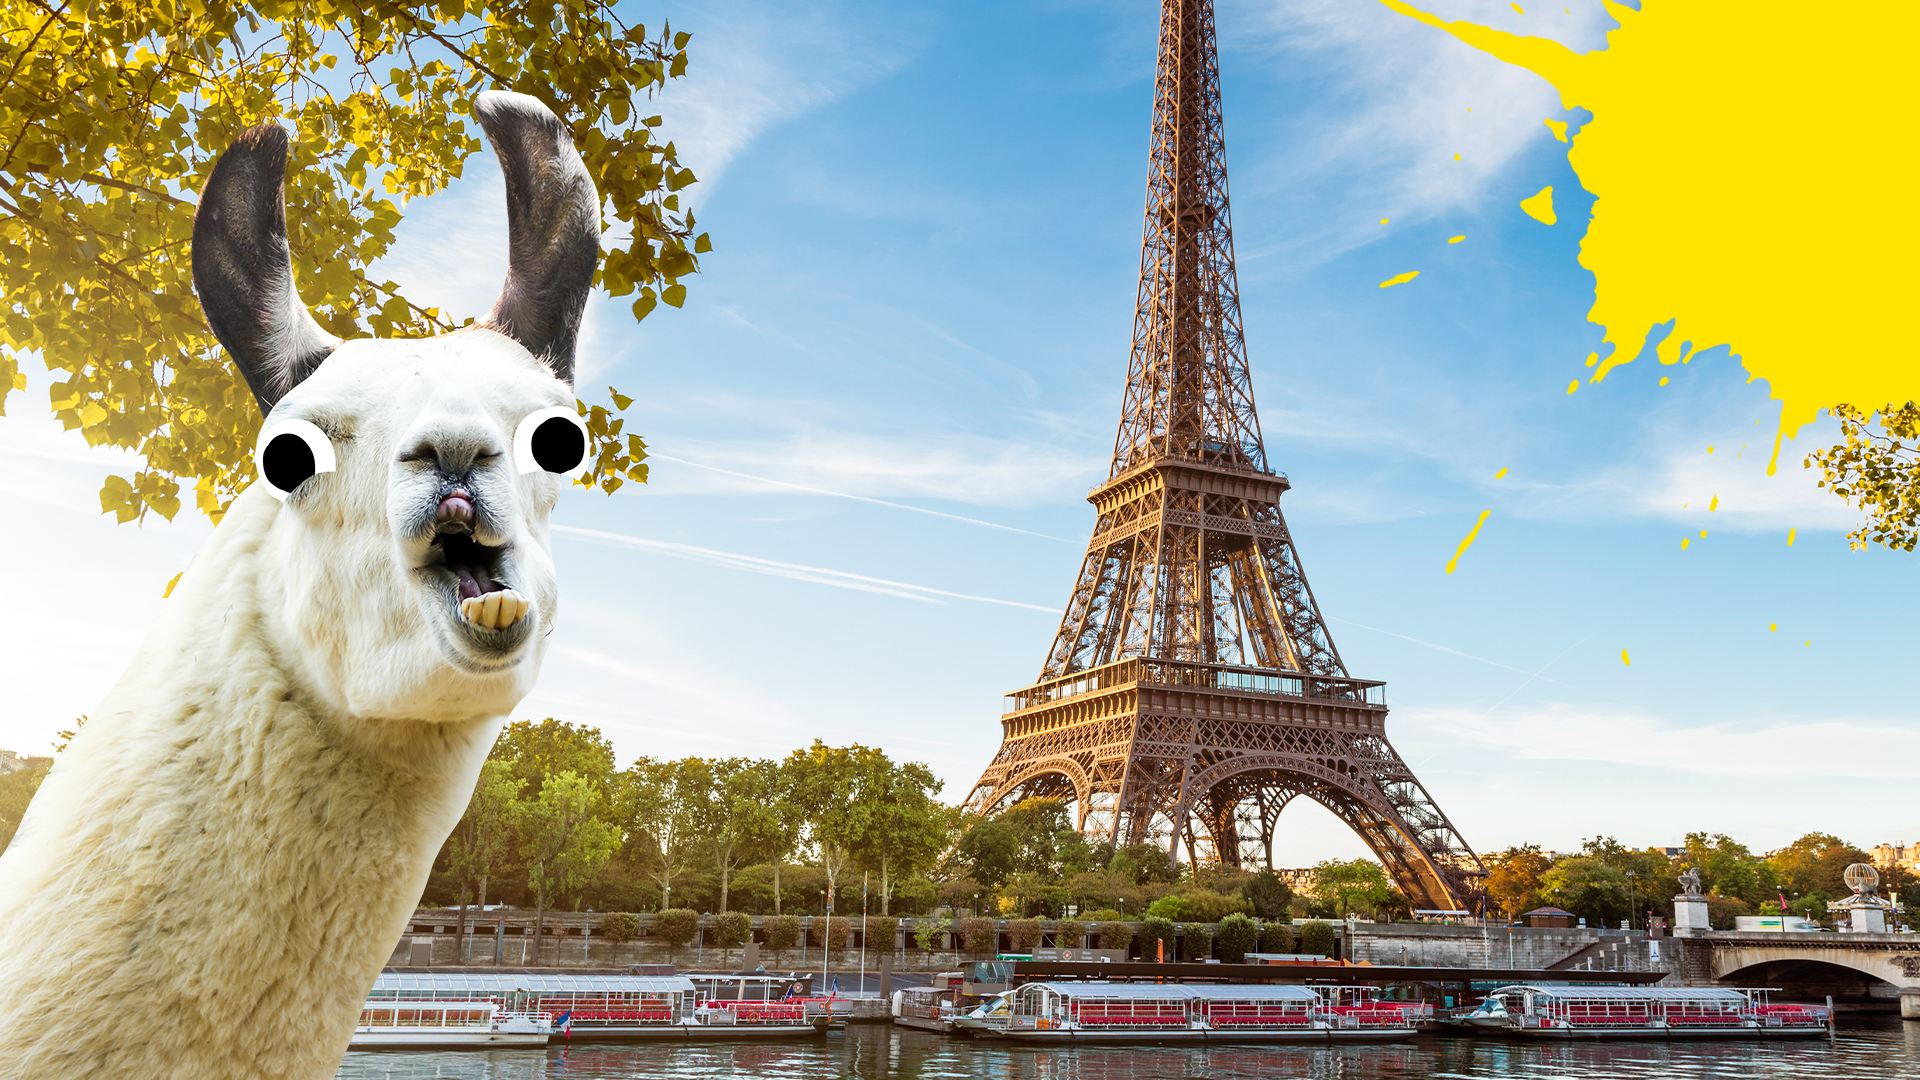 Eiffel Tower and derpy llama